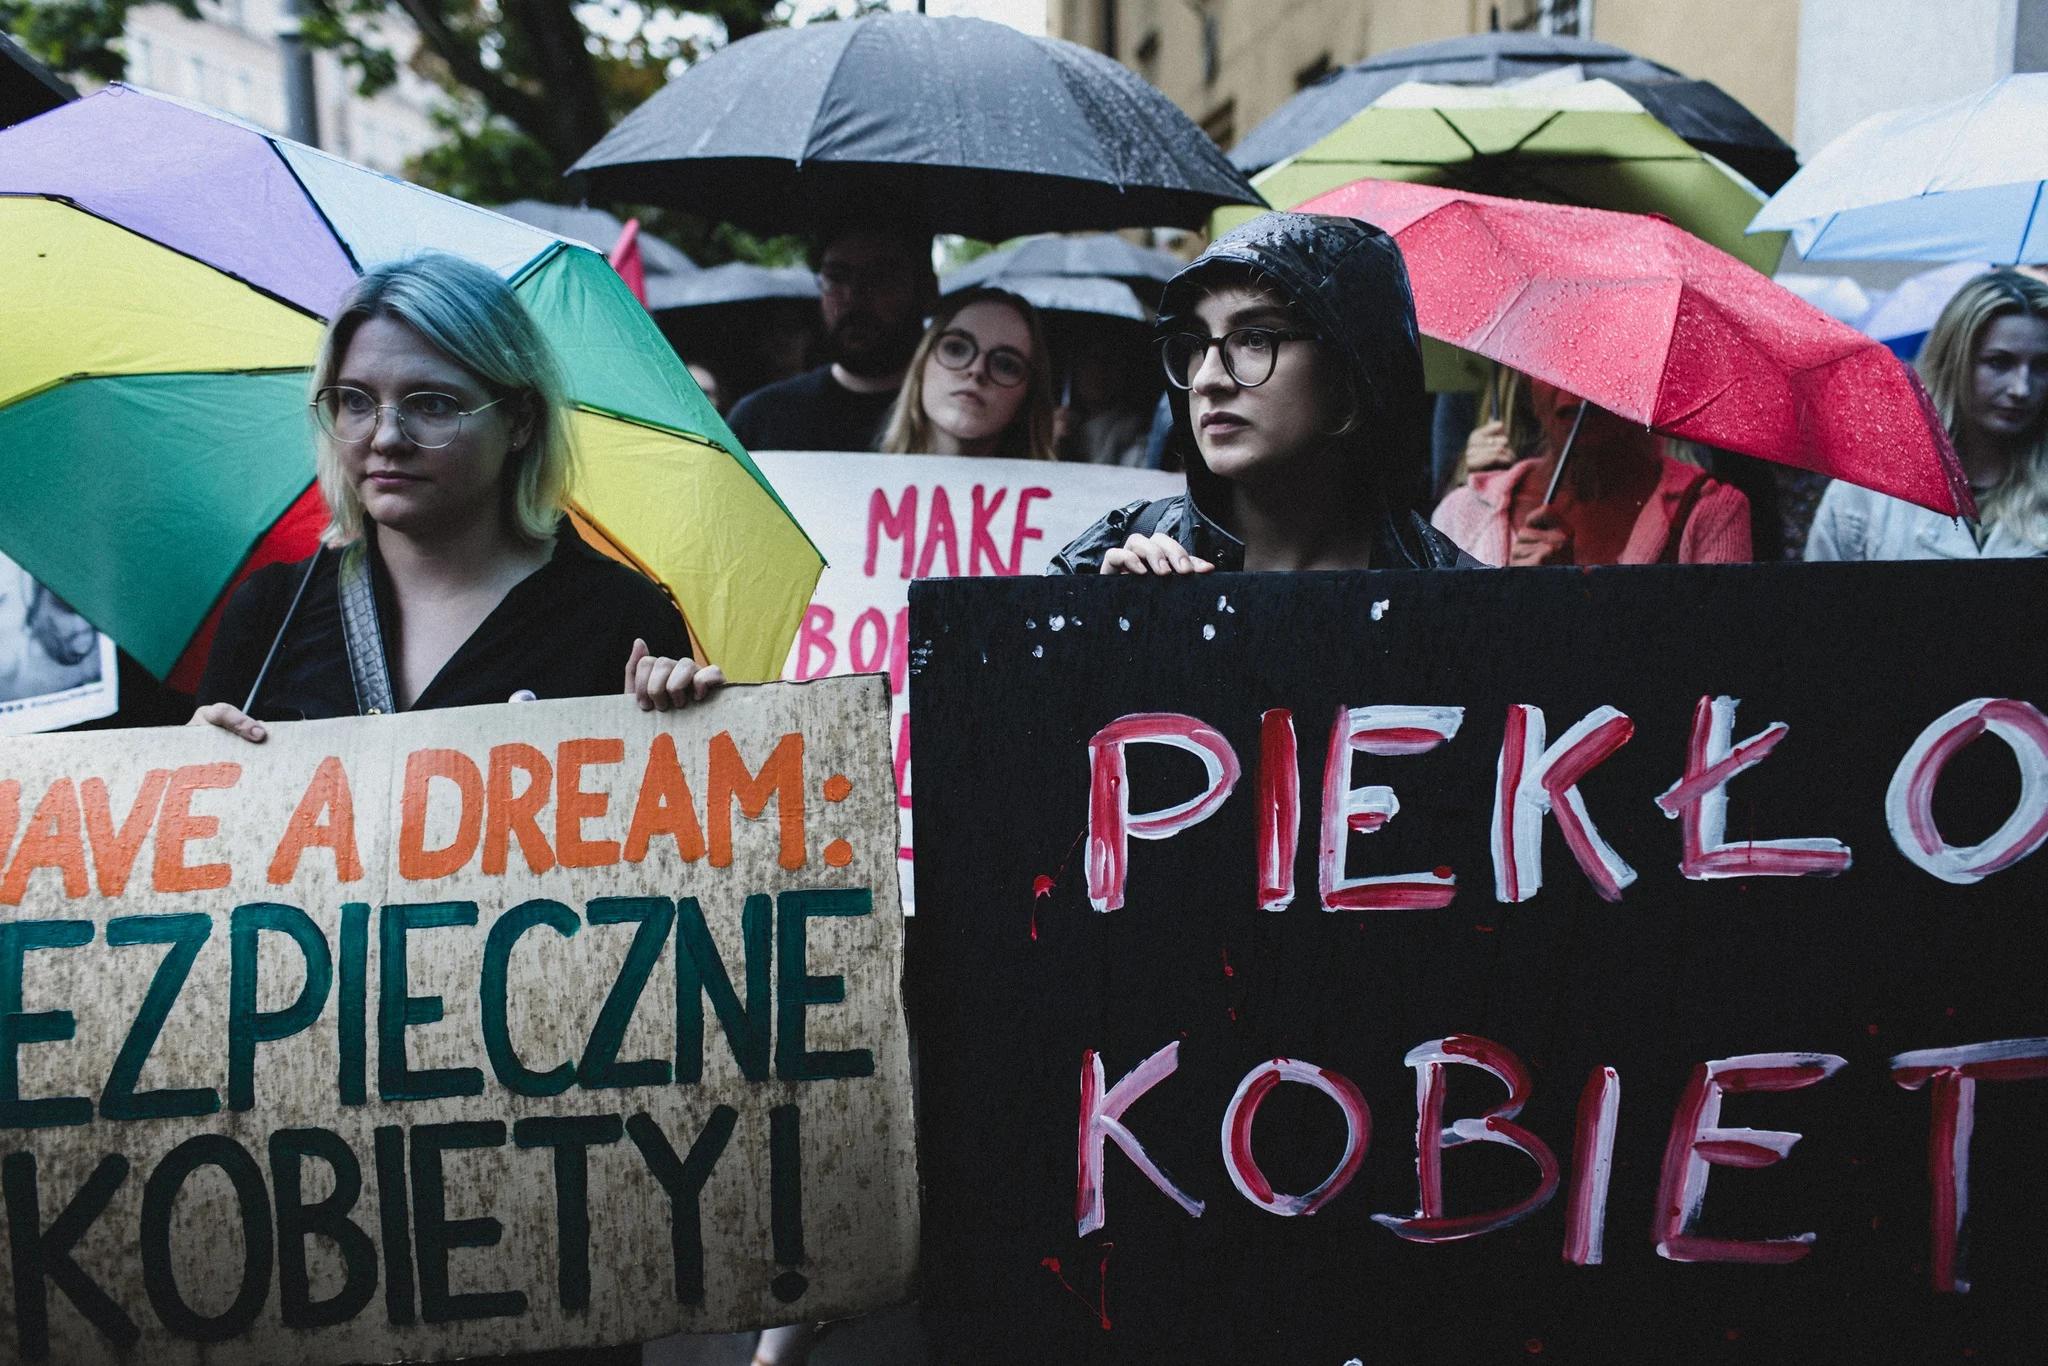 Protest w geście solidarności z panią Joanną. Na zdjęciu widać kobiety trzymające transparenty z napisami: "I have a dream: bezpieczne kobiety" oraz "Piekło kobiet".